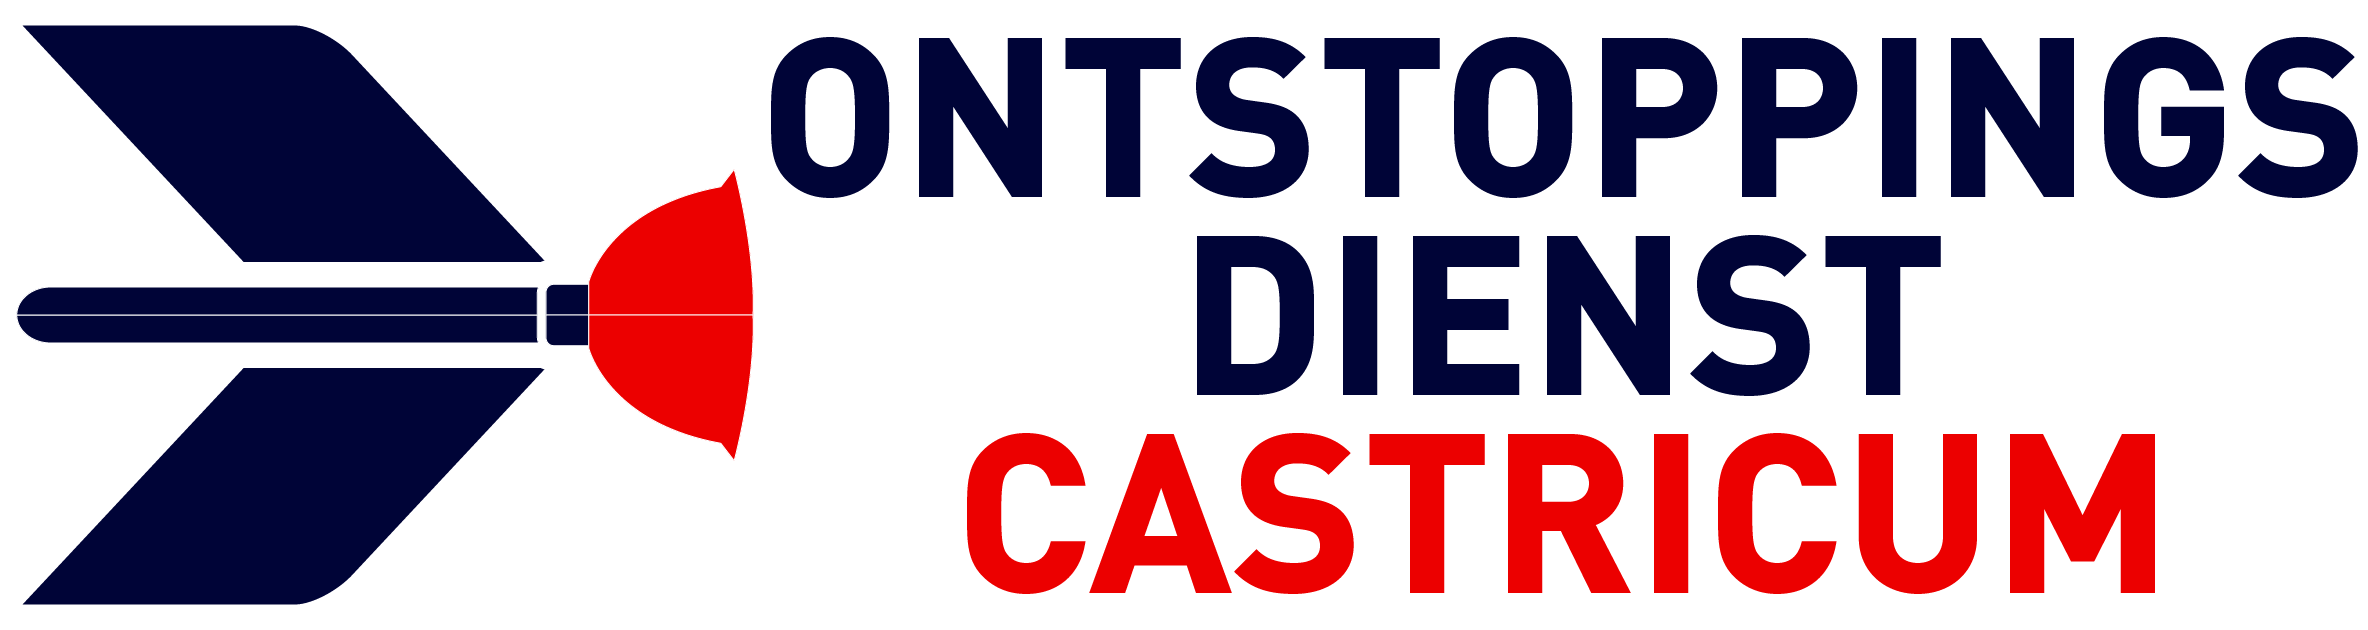 Ontstoppingsdienst Castricum logo